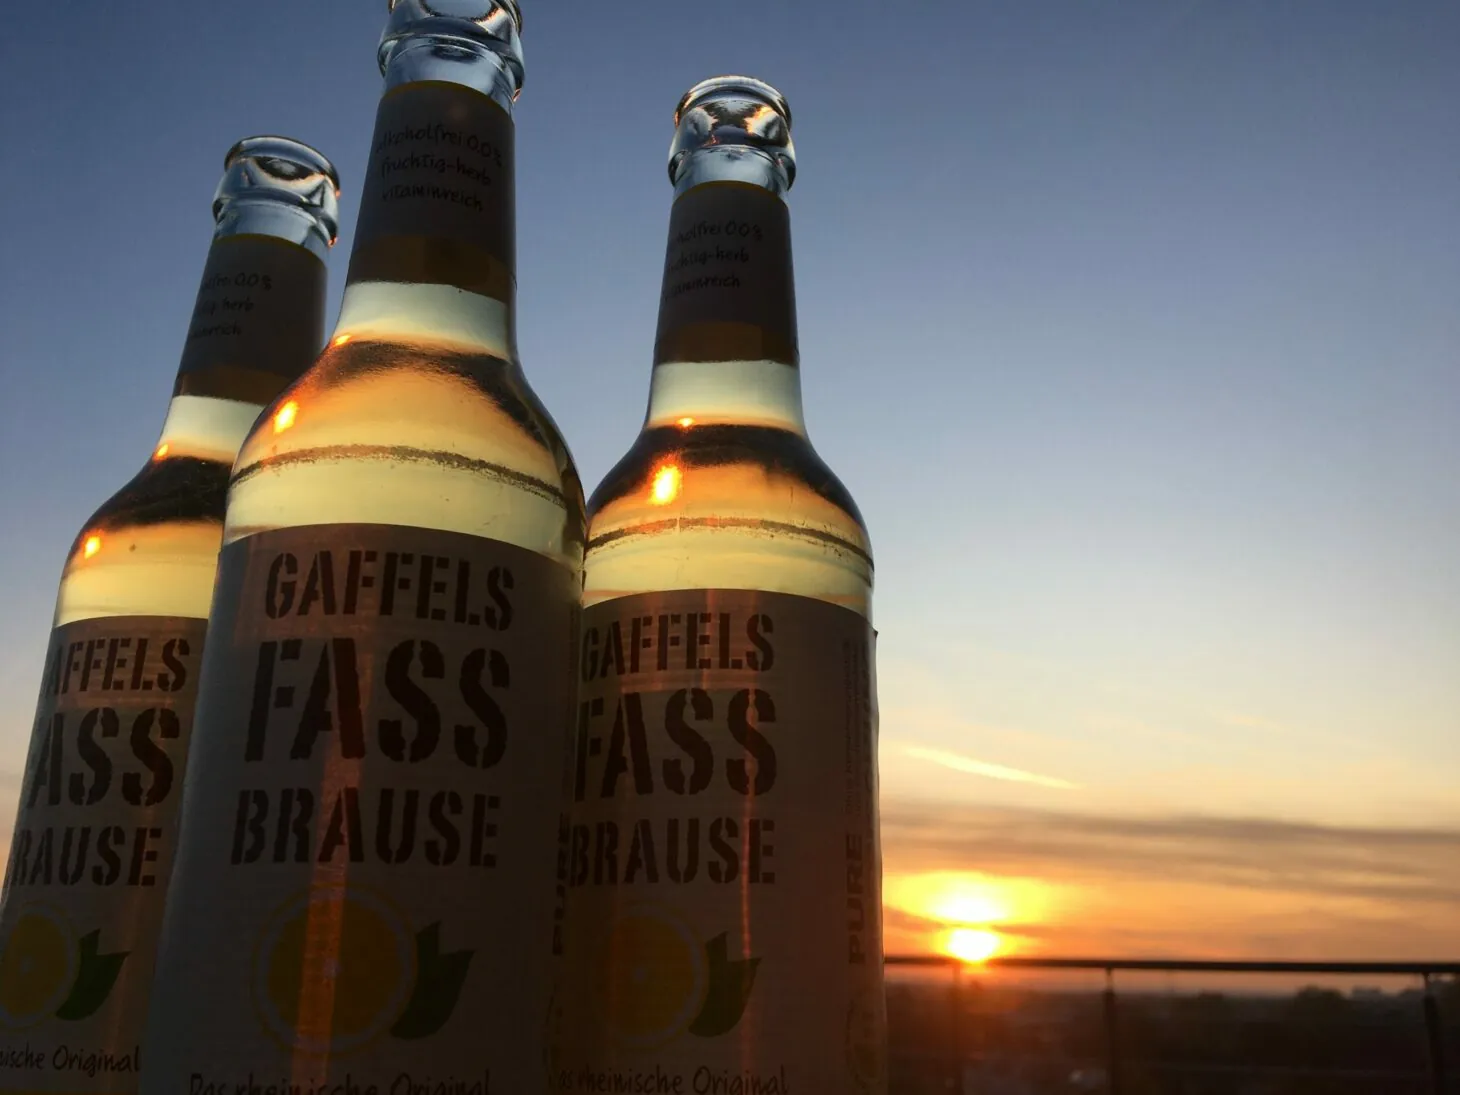 Bild von drei Flaschen Fassbrause vor dem Sonnenuntergang, valantic Niederlassung Siegburg